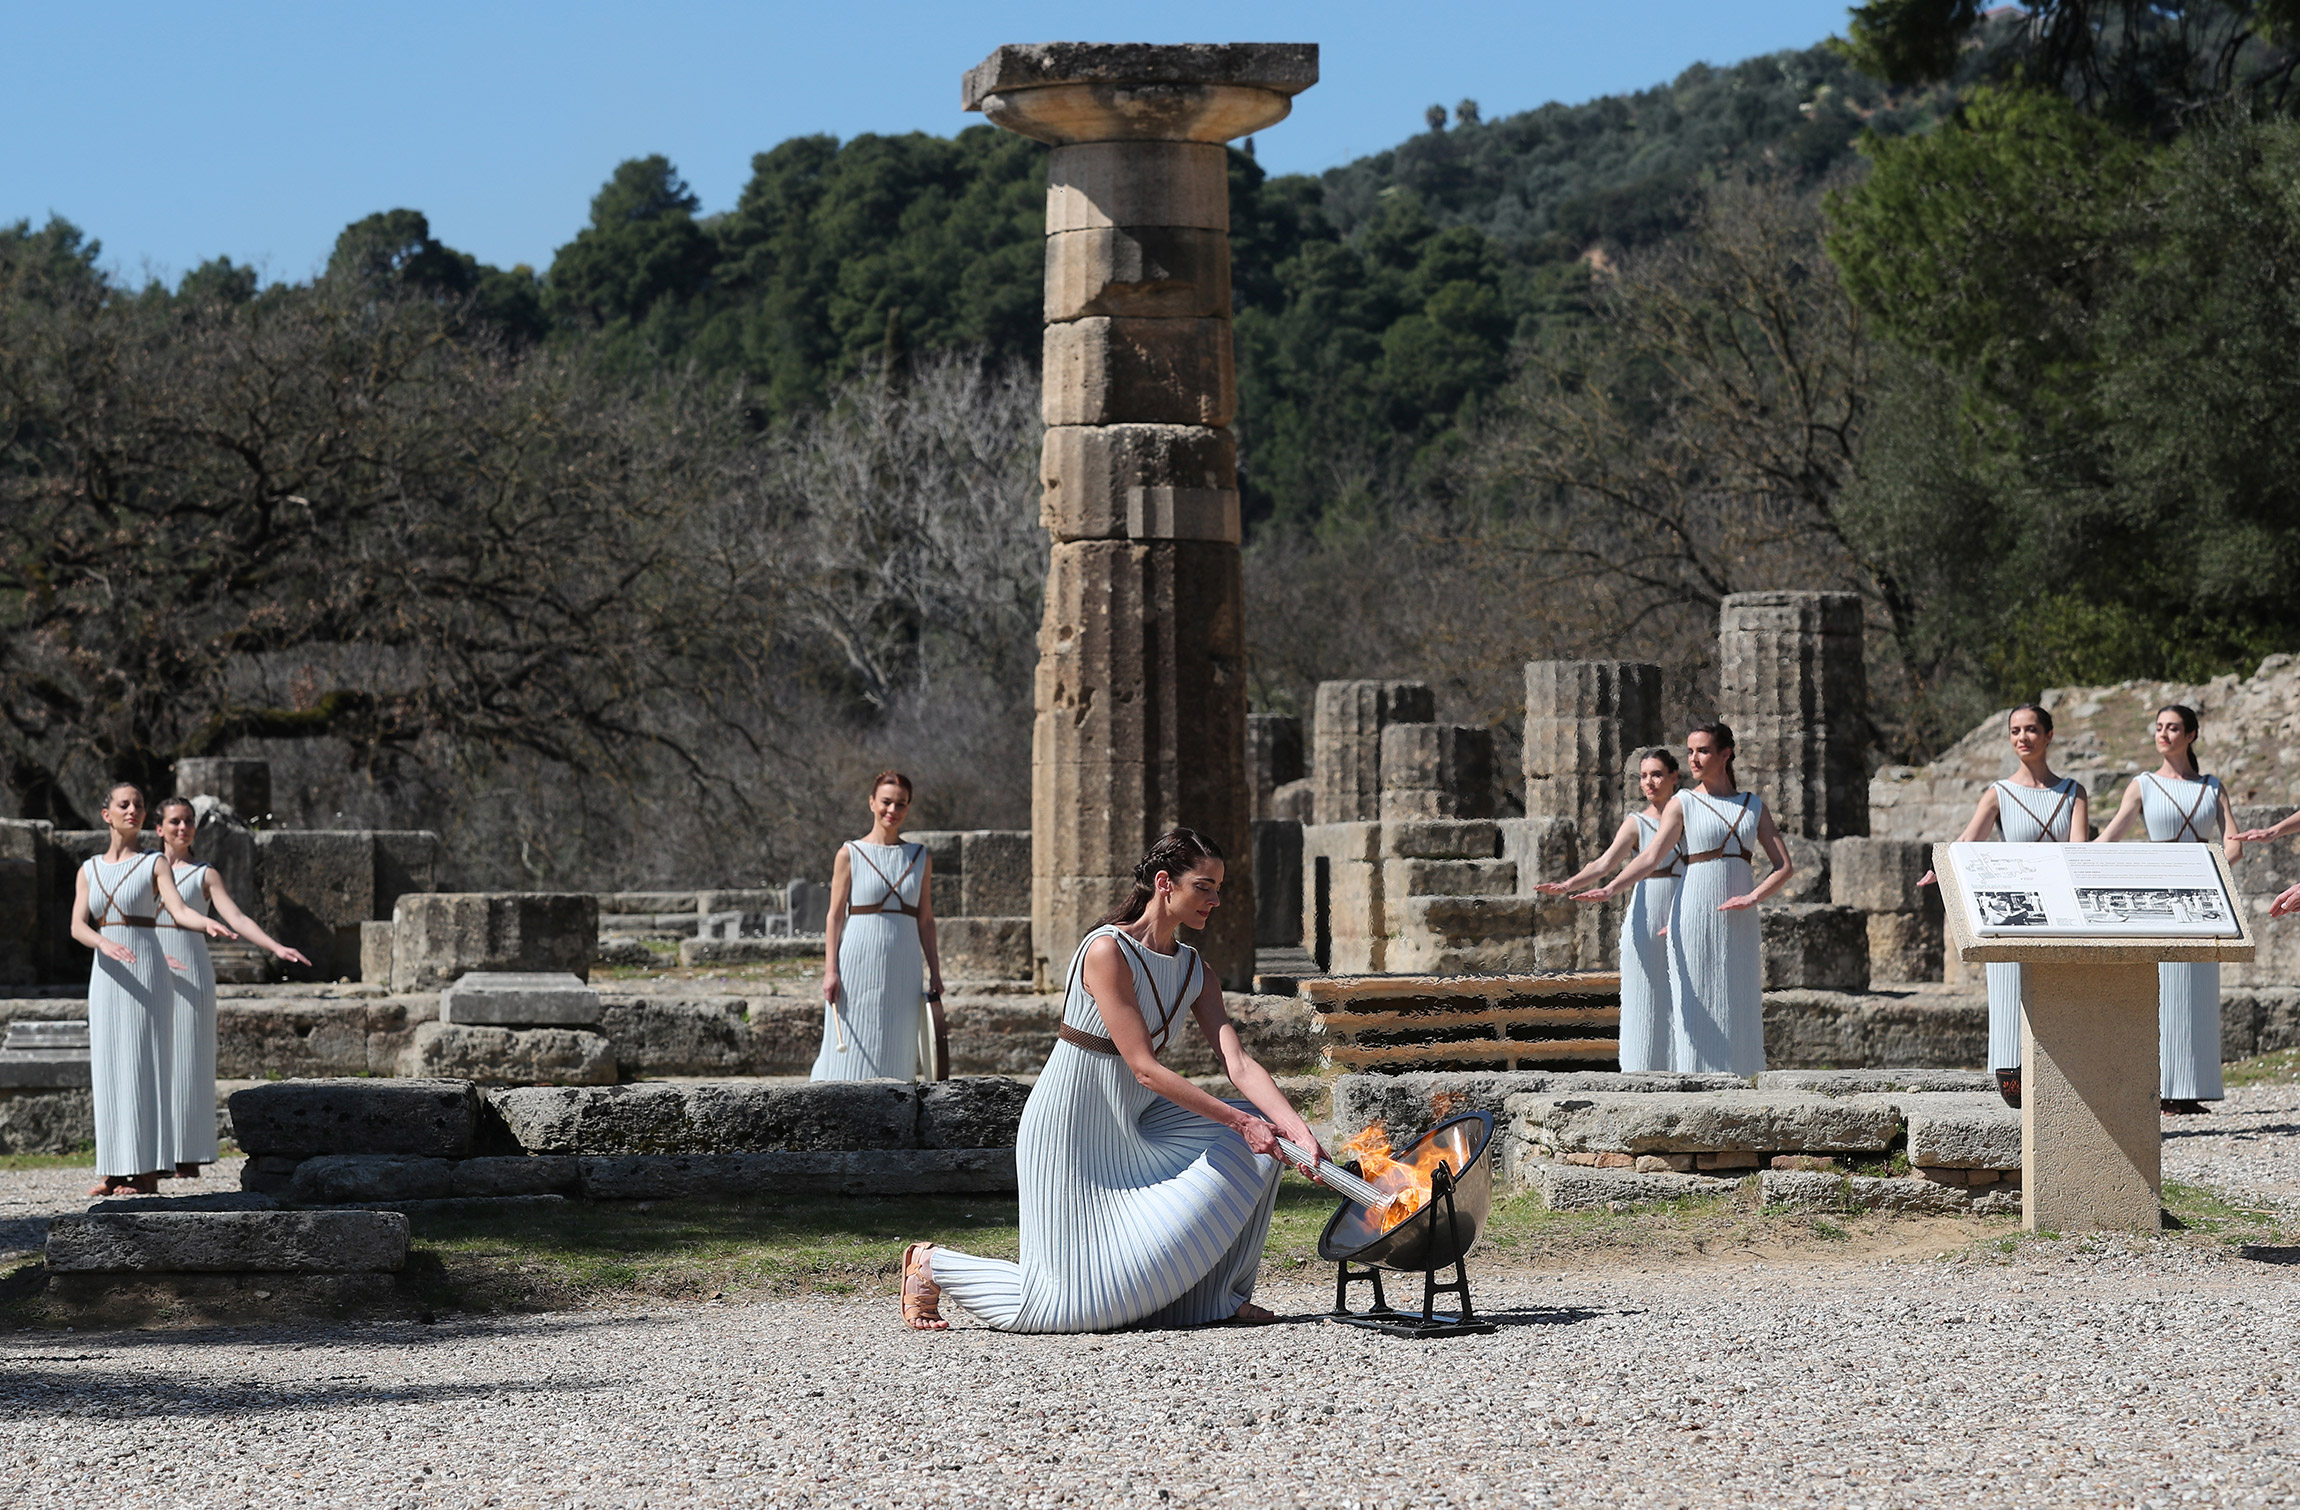 Олимпия&nbsp;&mdash; одно из крупнейших святилищ Древней Греции на Пелопоннесе, где возникли и на протяжении многих веков проводились Олимпийские игры
&nbsp;